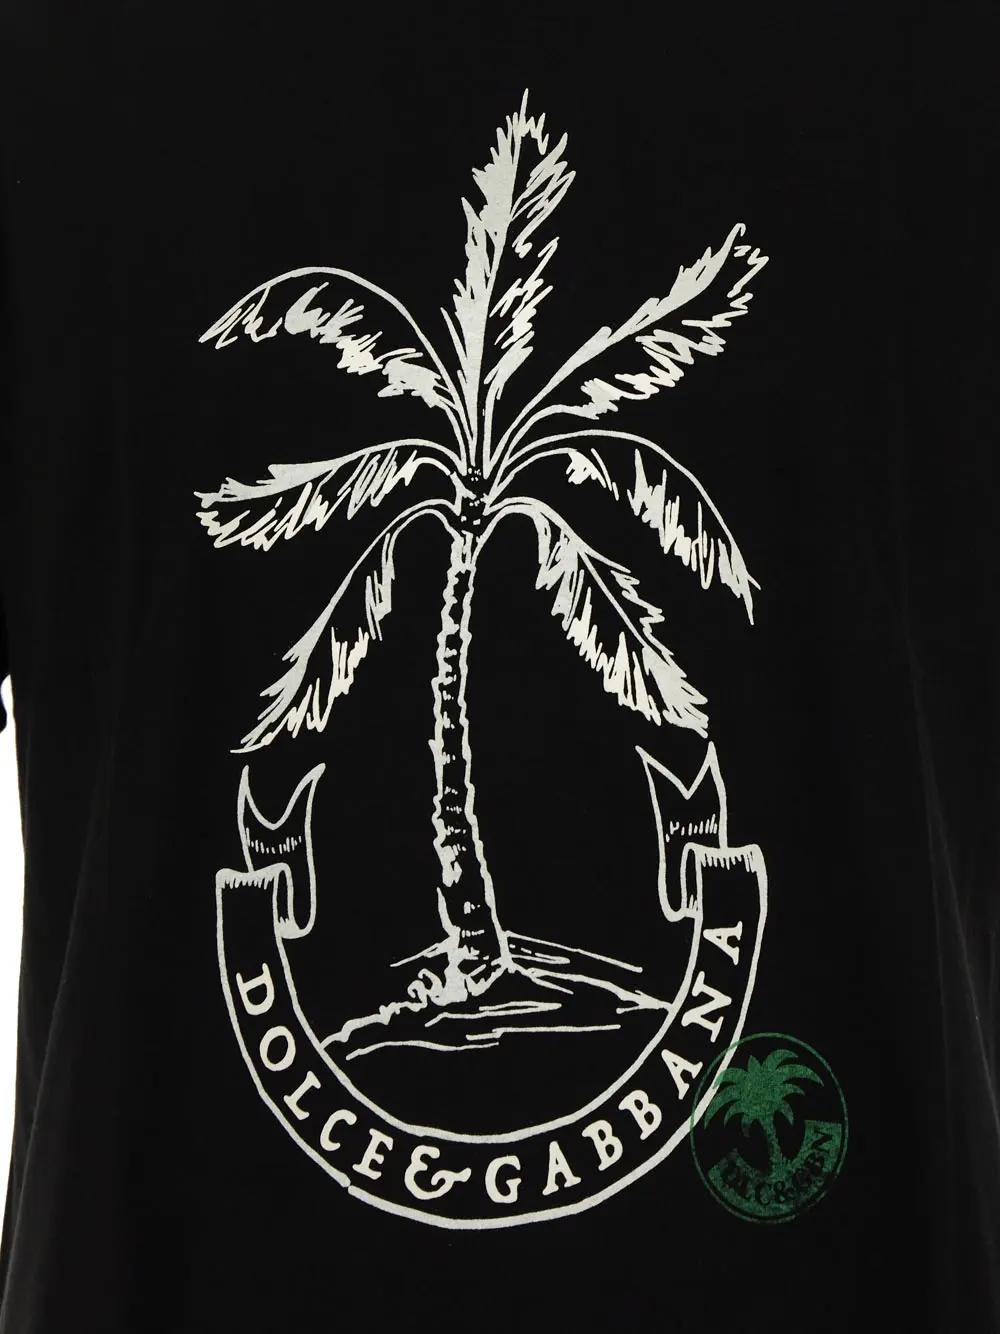 Shop Dolce & Gabbana Cotton T-shirt